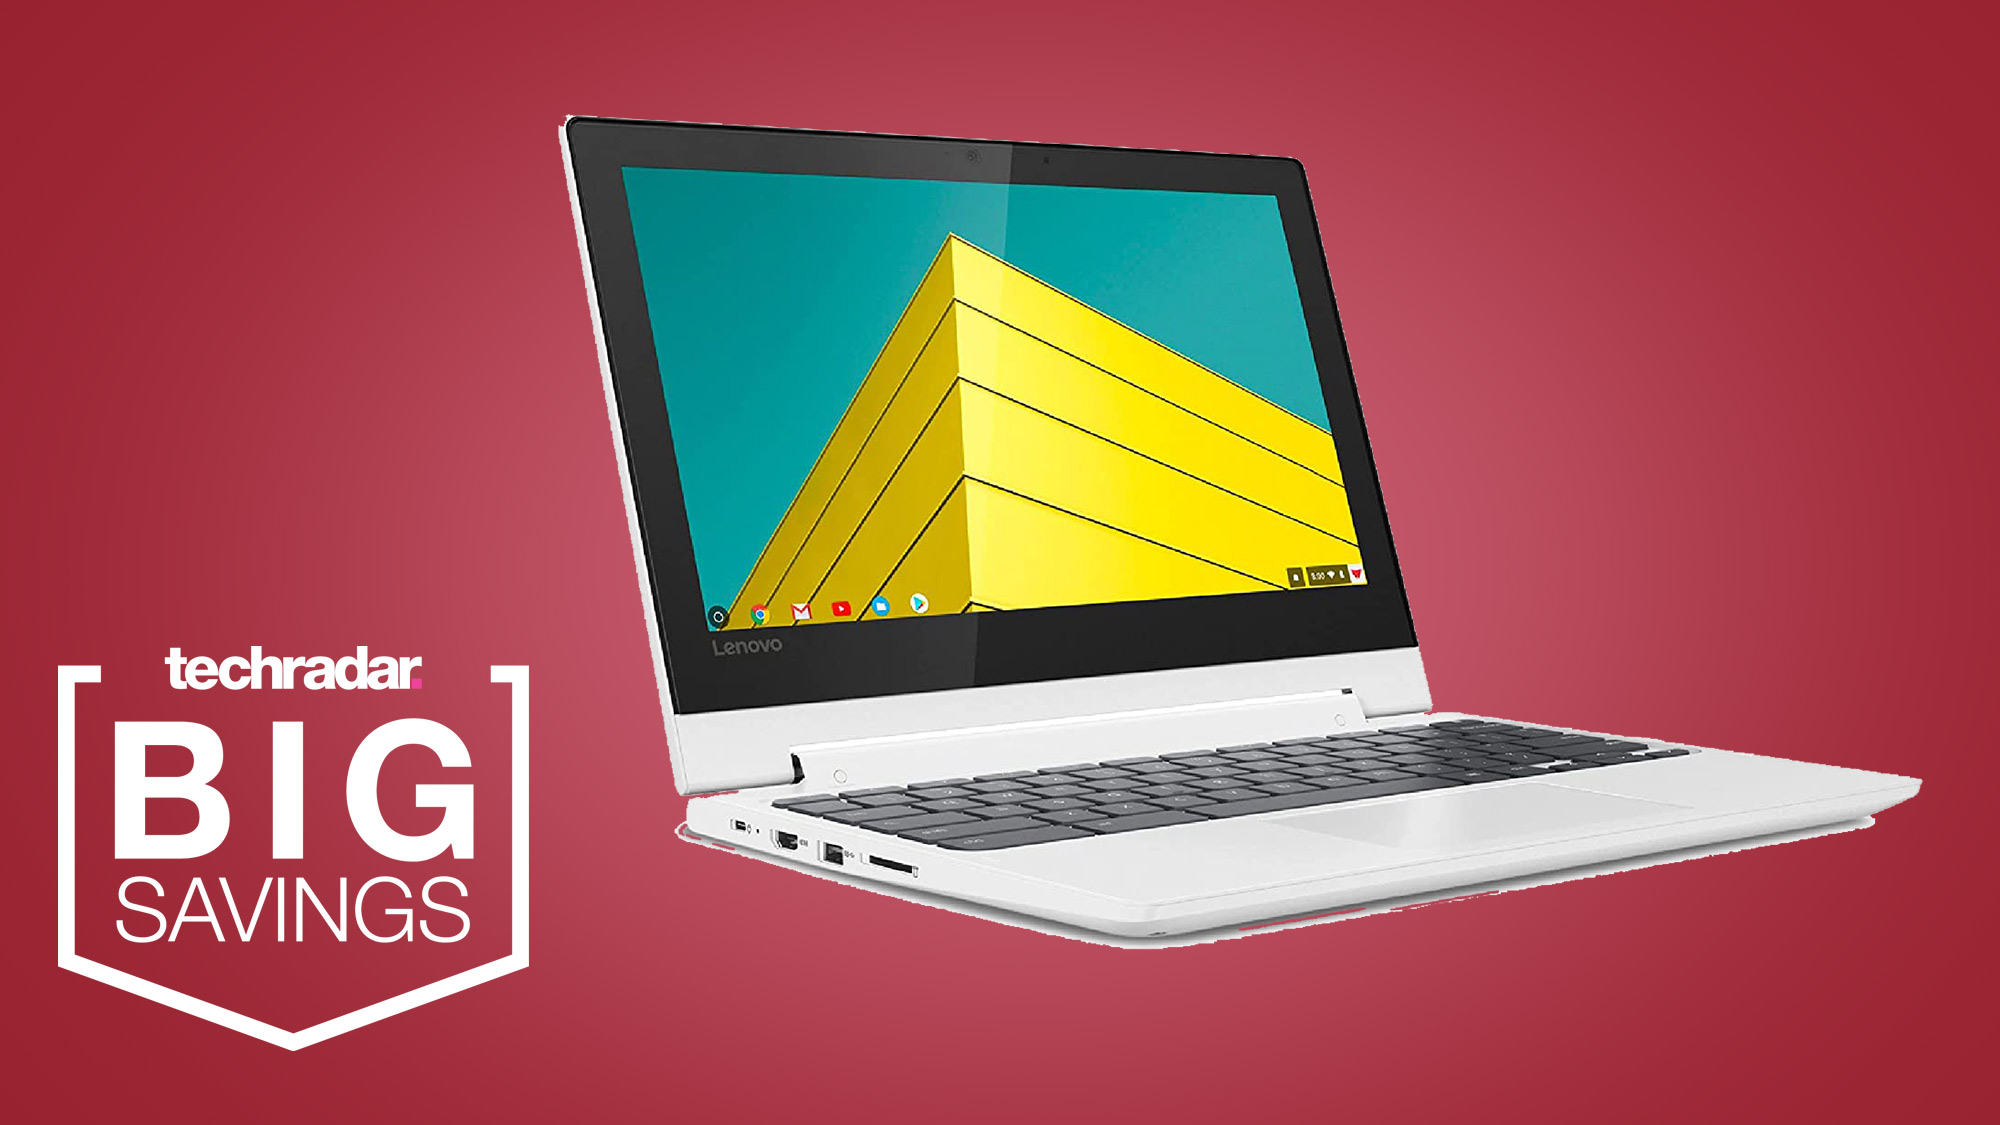 Lenovo Chromebook auf rotem Hintergrund mit Docurator-Abzeichenanzeige 